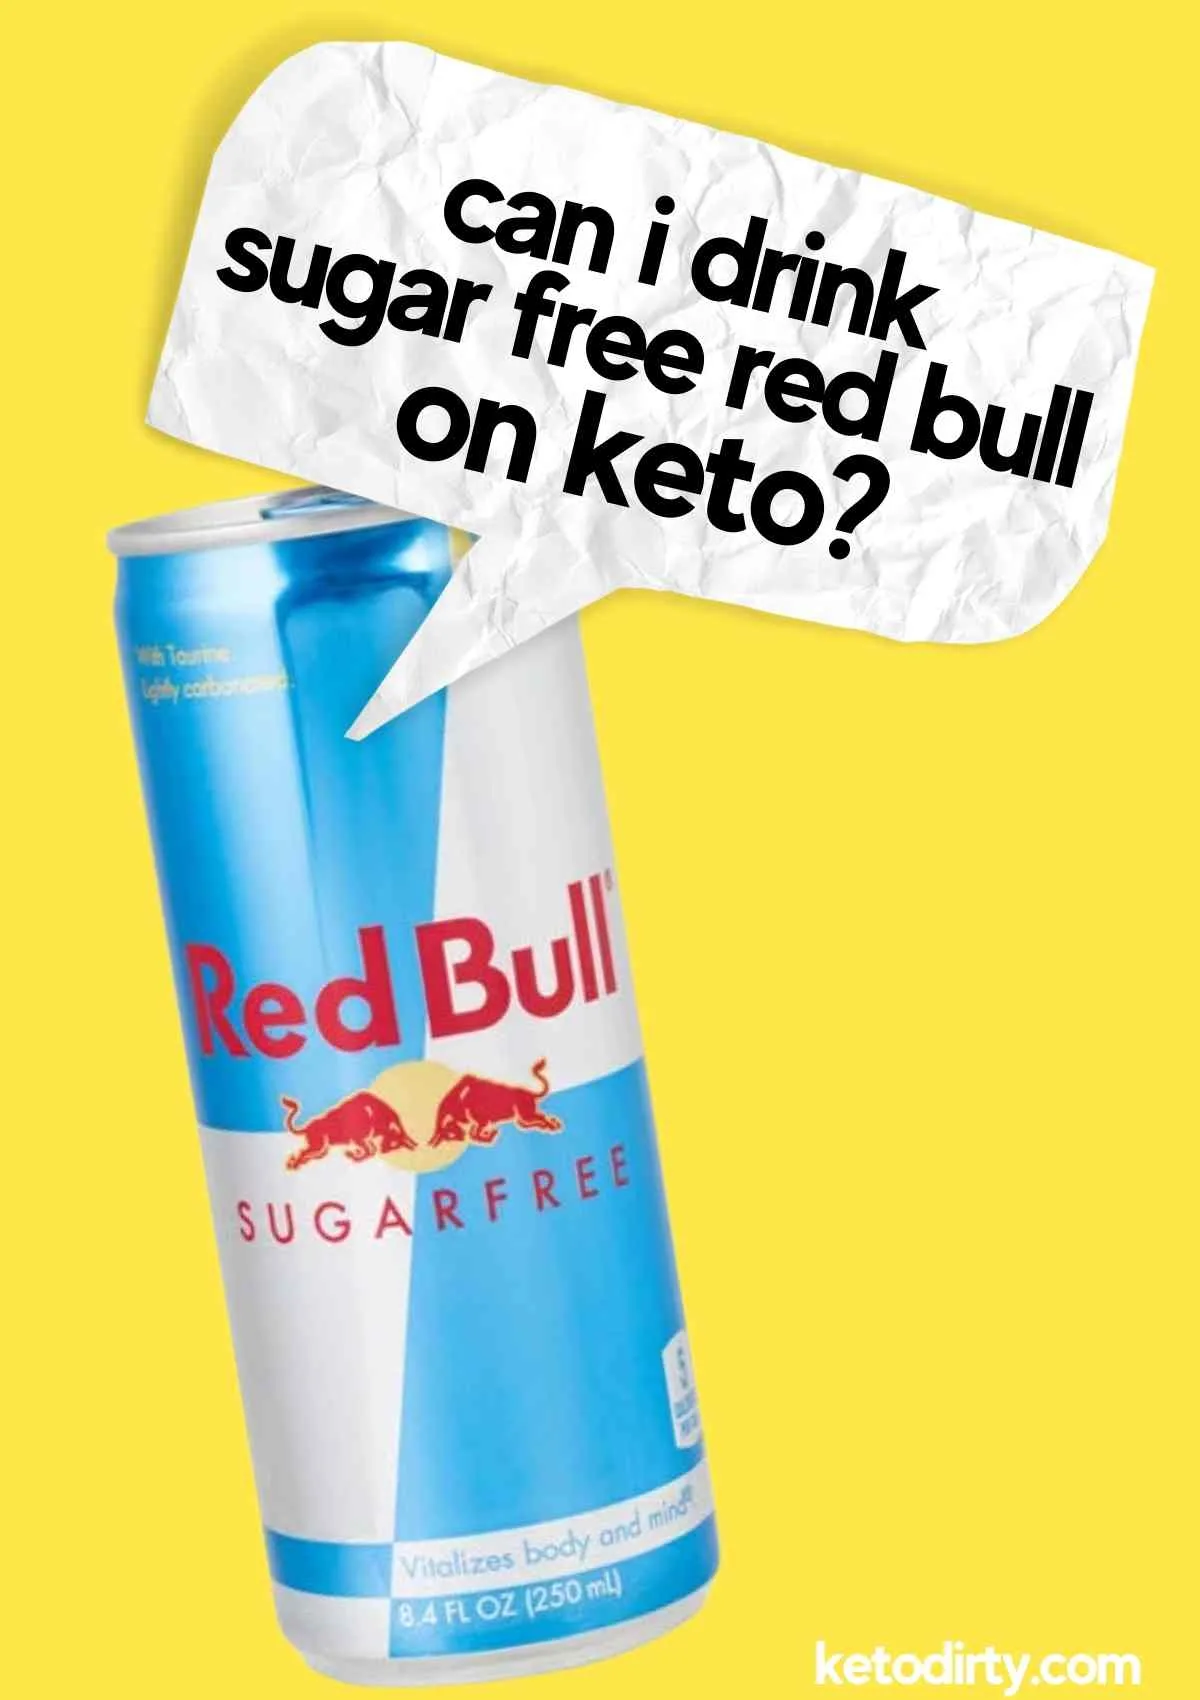 Sugar Free Red Bull Keto Friendly? 5 Things To Know